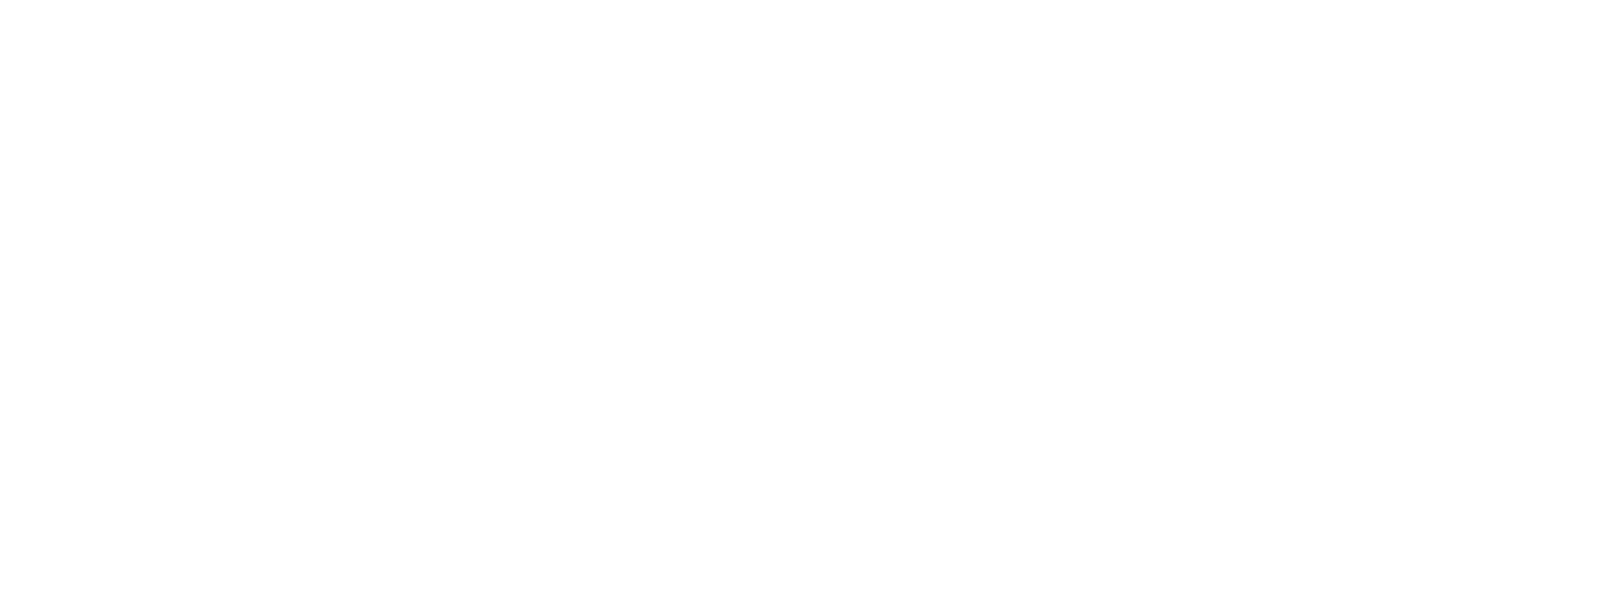 eset-logo-image